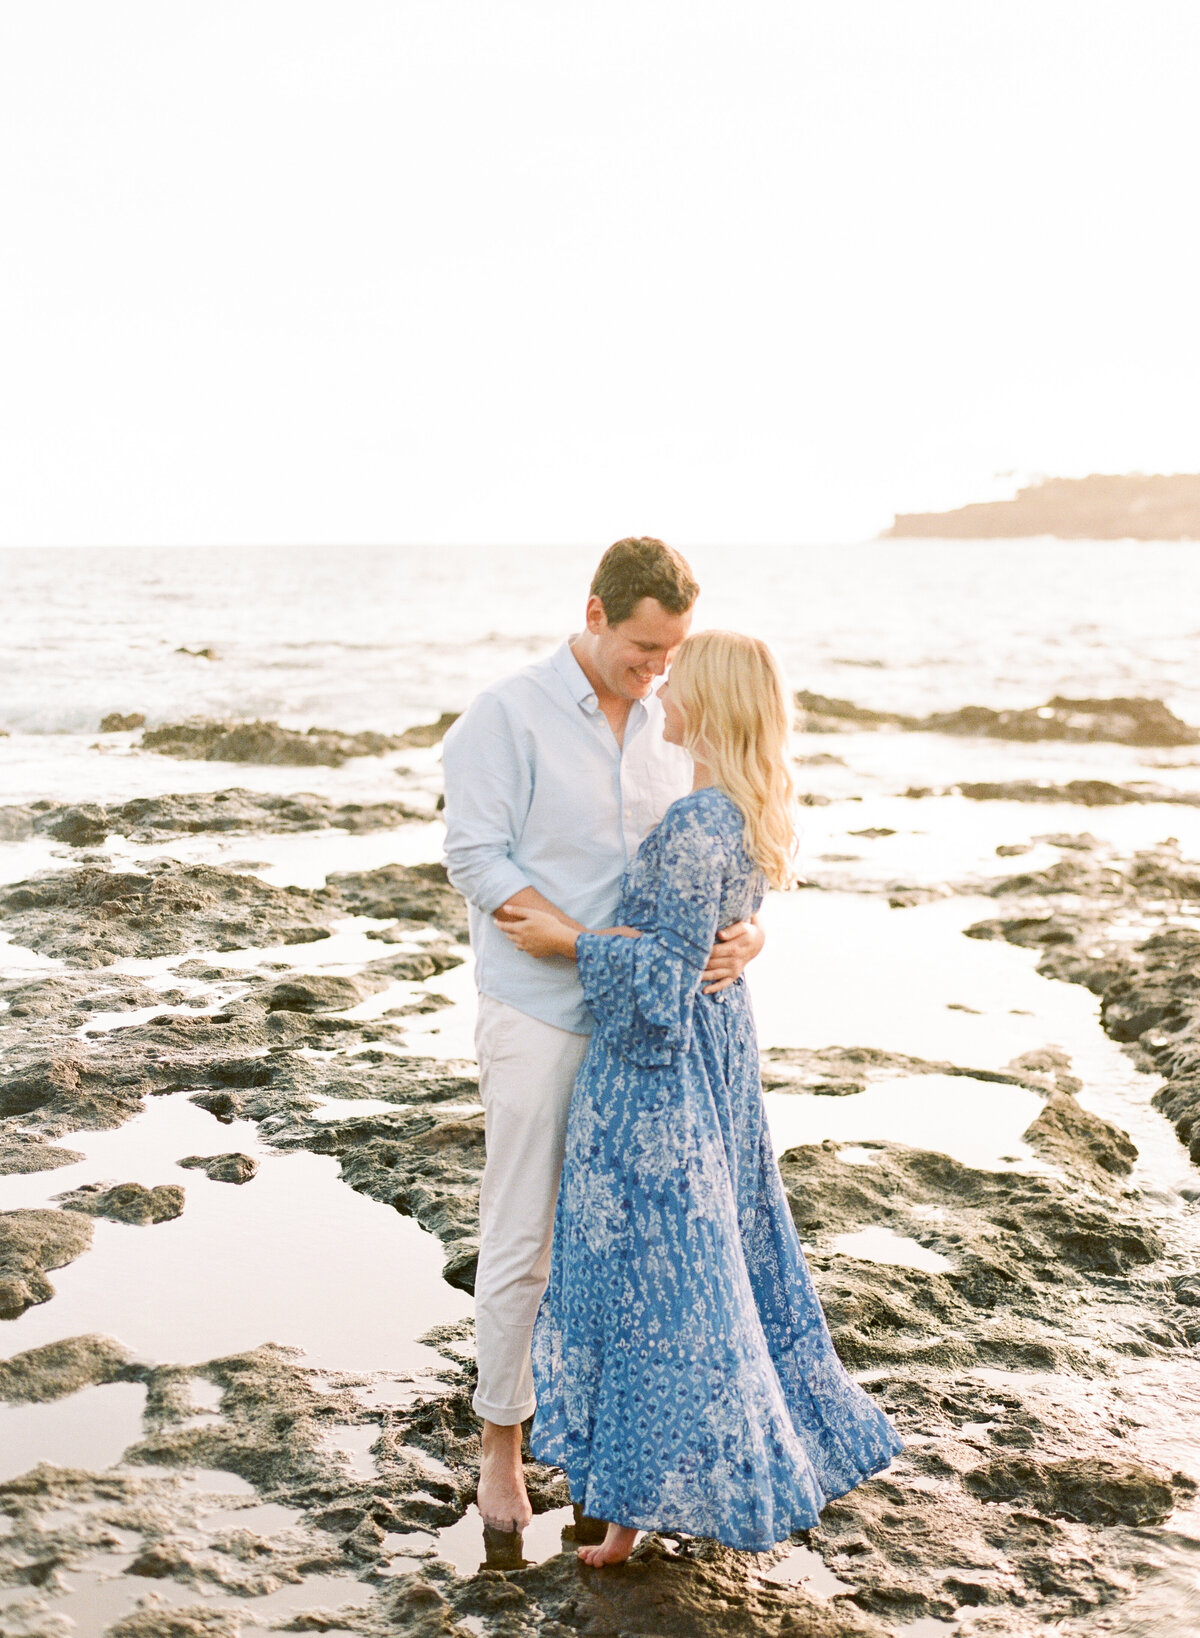 Caroline+Braedon | Hawaii Wedding & Lifestyle Photography | Ashley Goodwin Photography